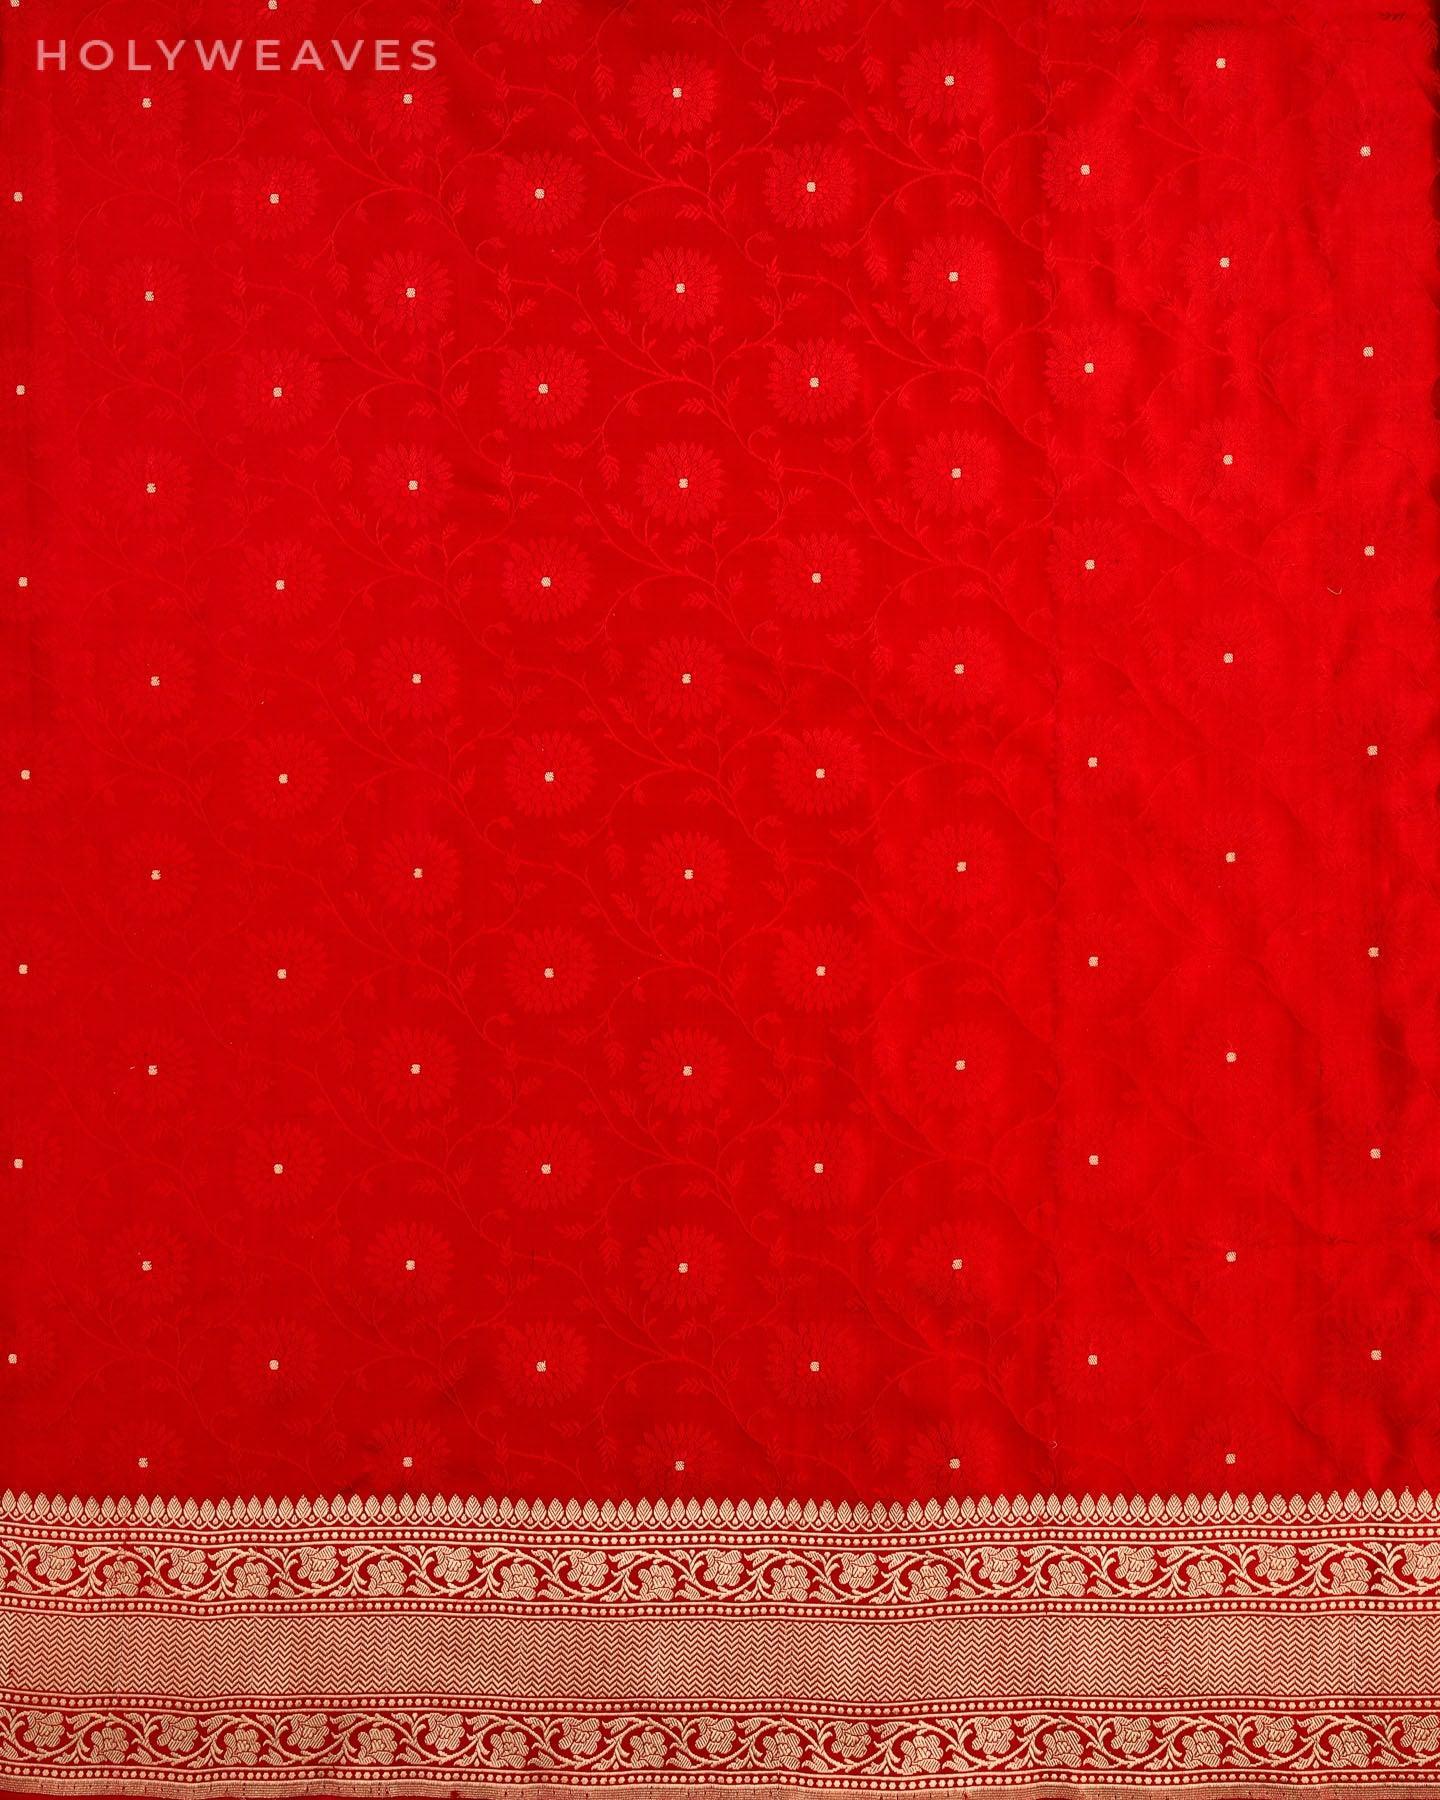 Deep Red Banarasi Satin Tanchoi Brocade Handwoven Katan Silk Saree - By HolyWeaves, Benares